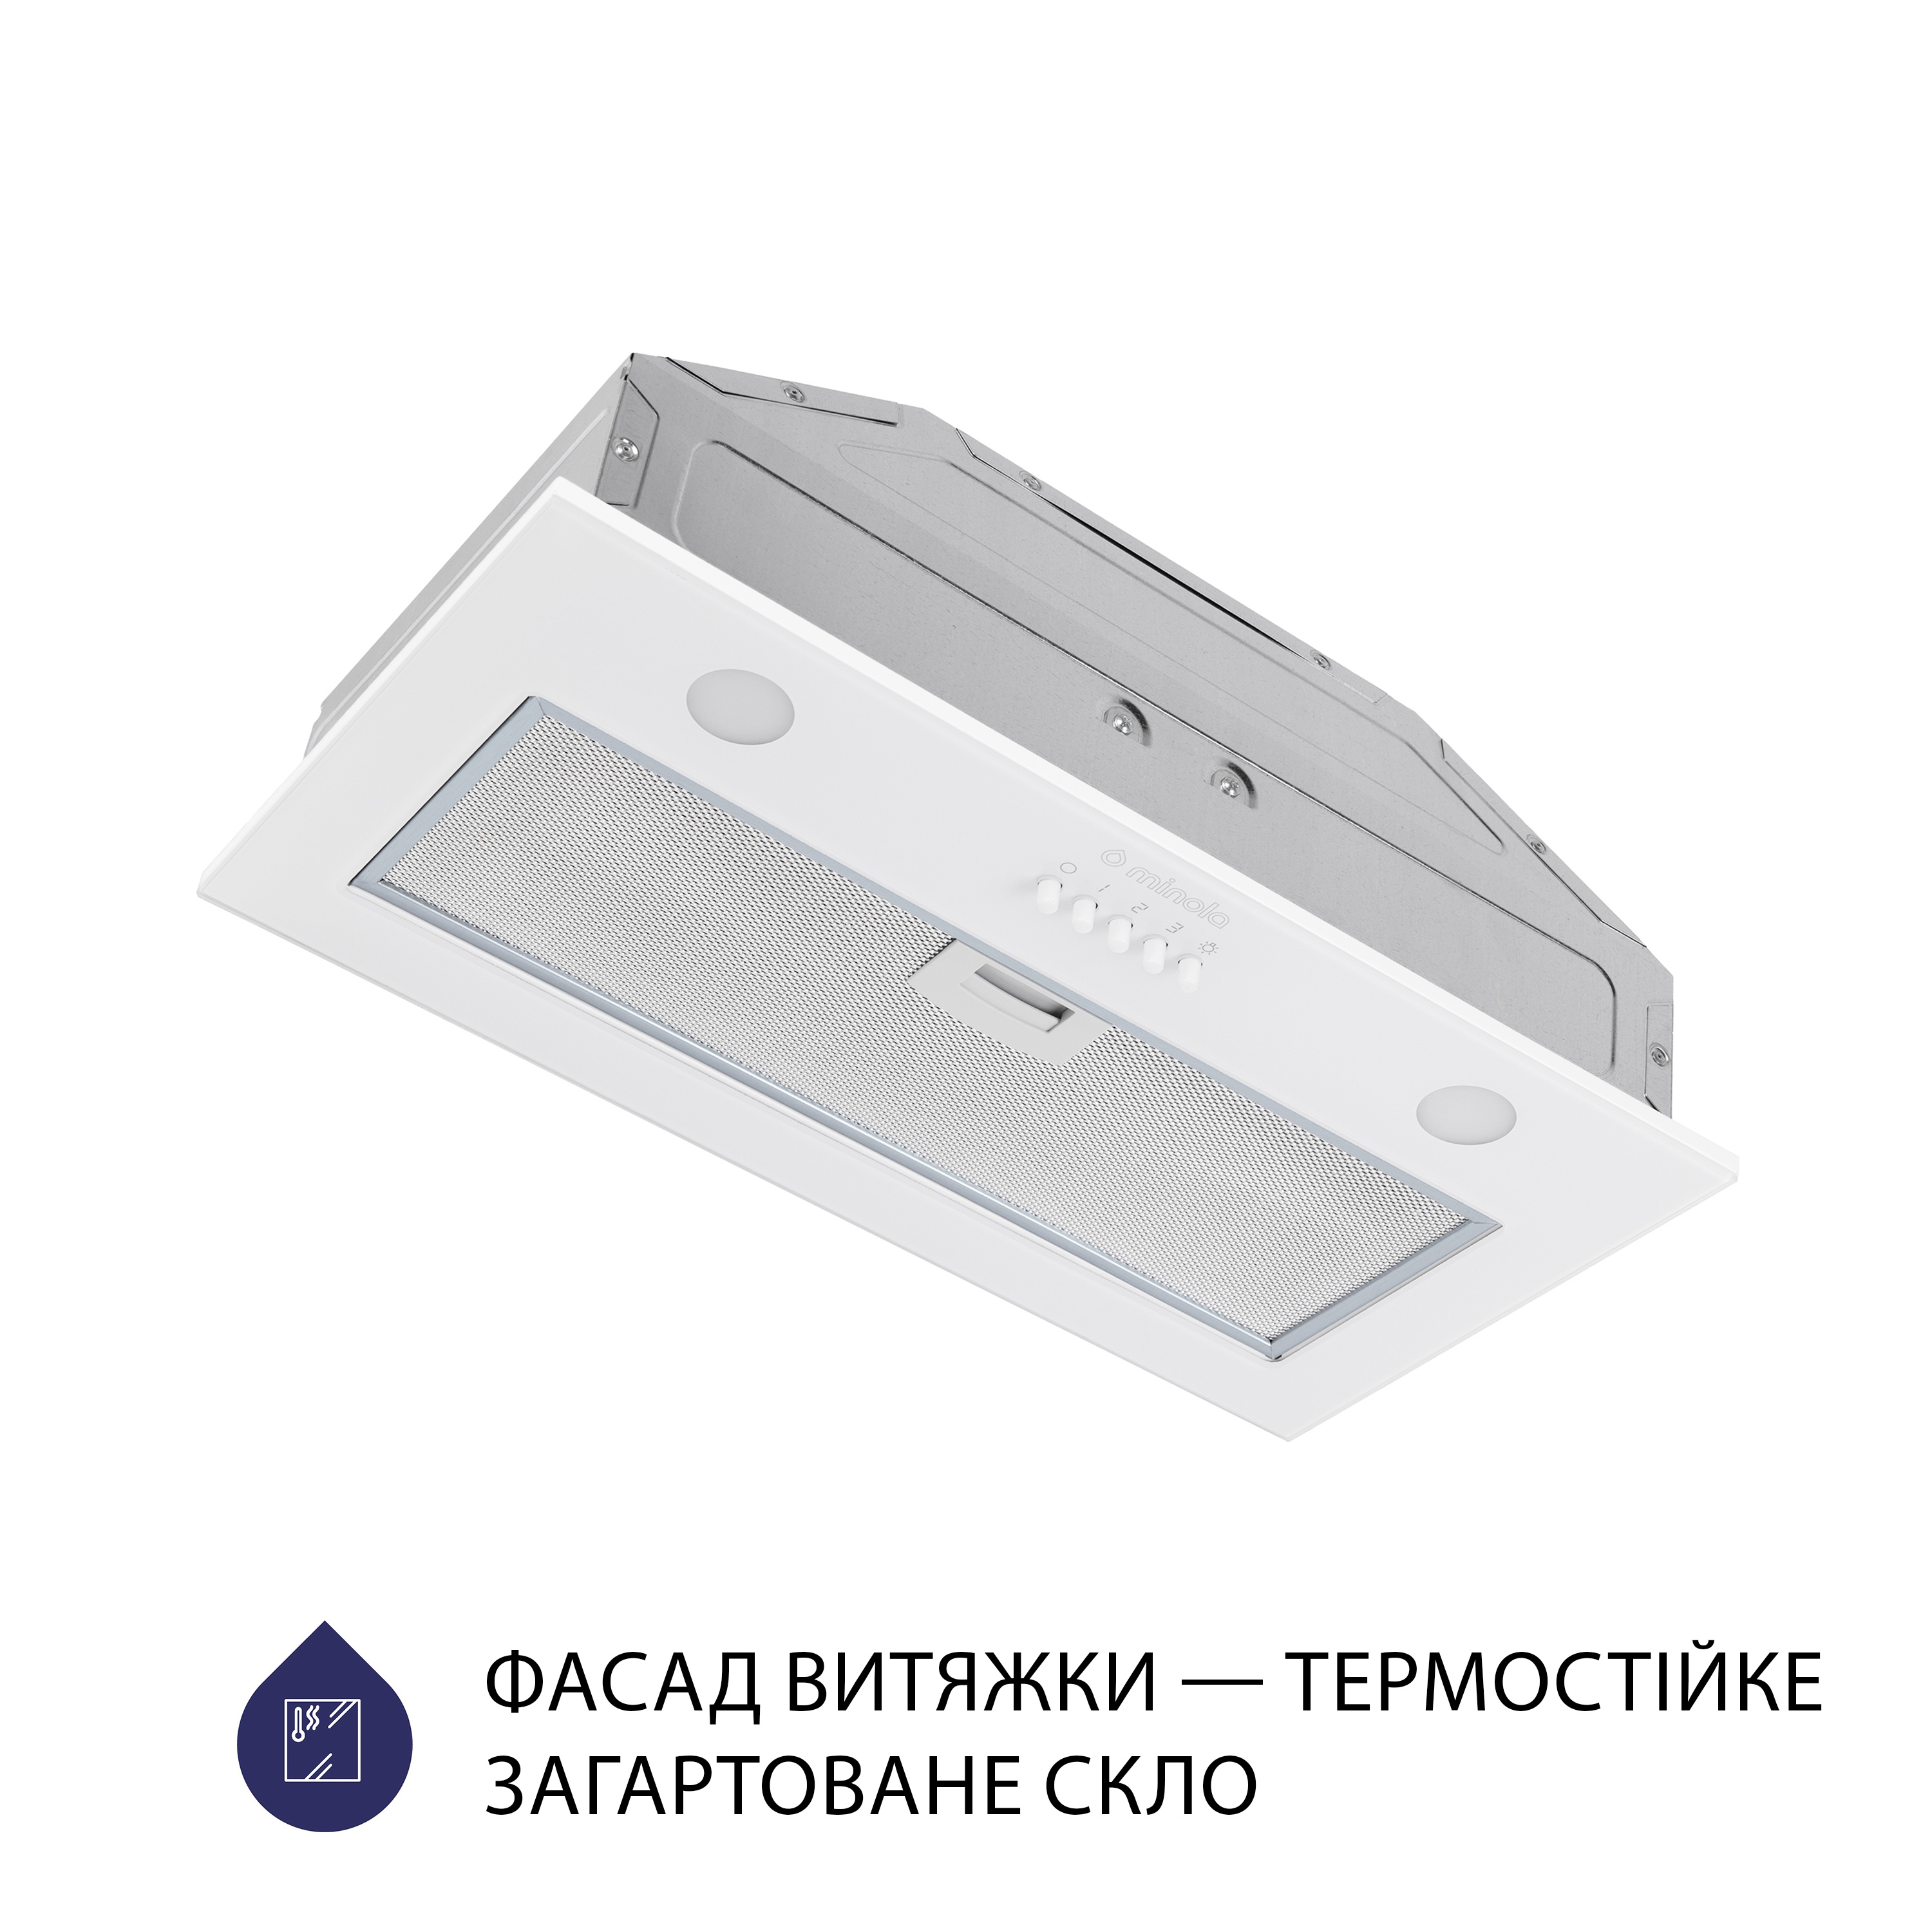 продаємо Minola HBI 52621 WH GLASS 700 LED в Україні - фото 4